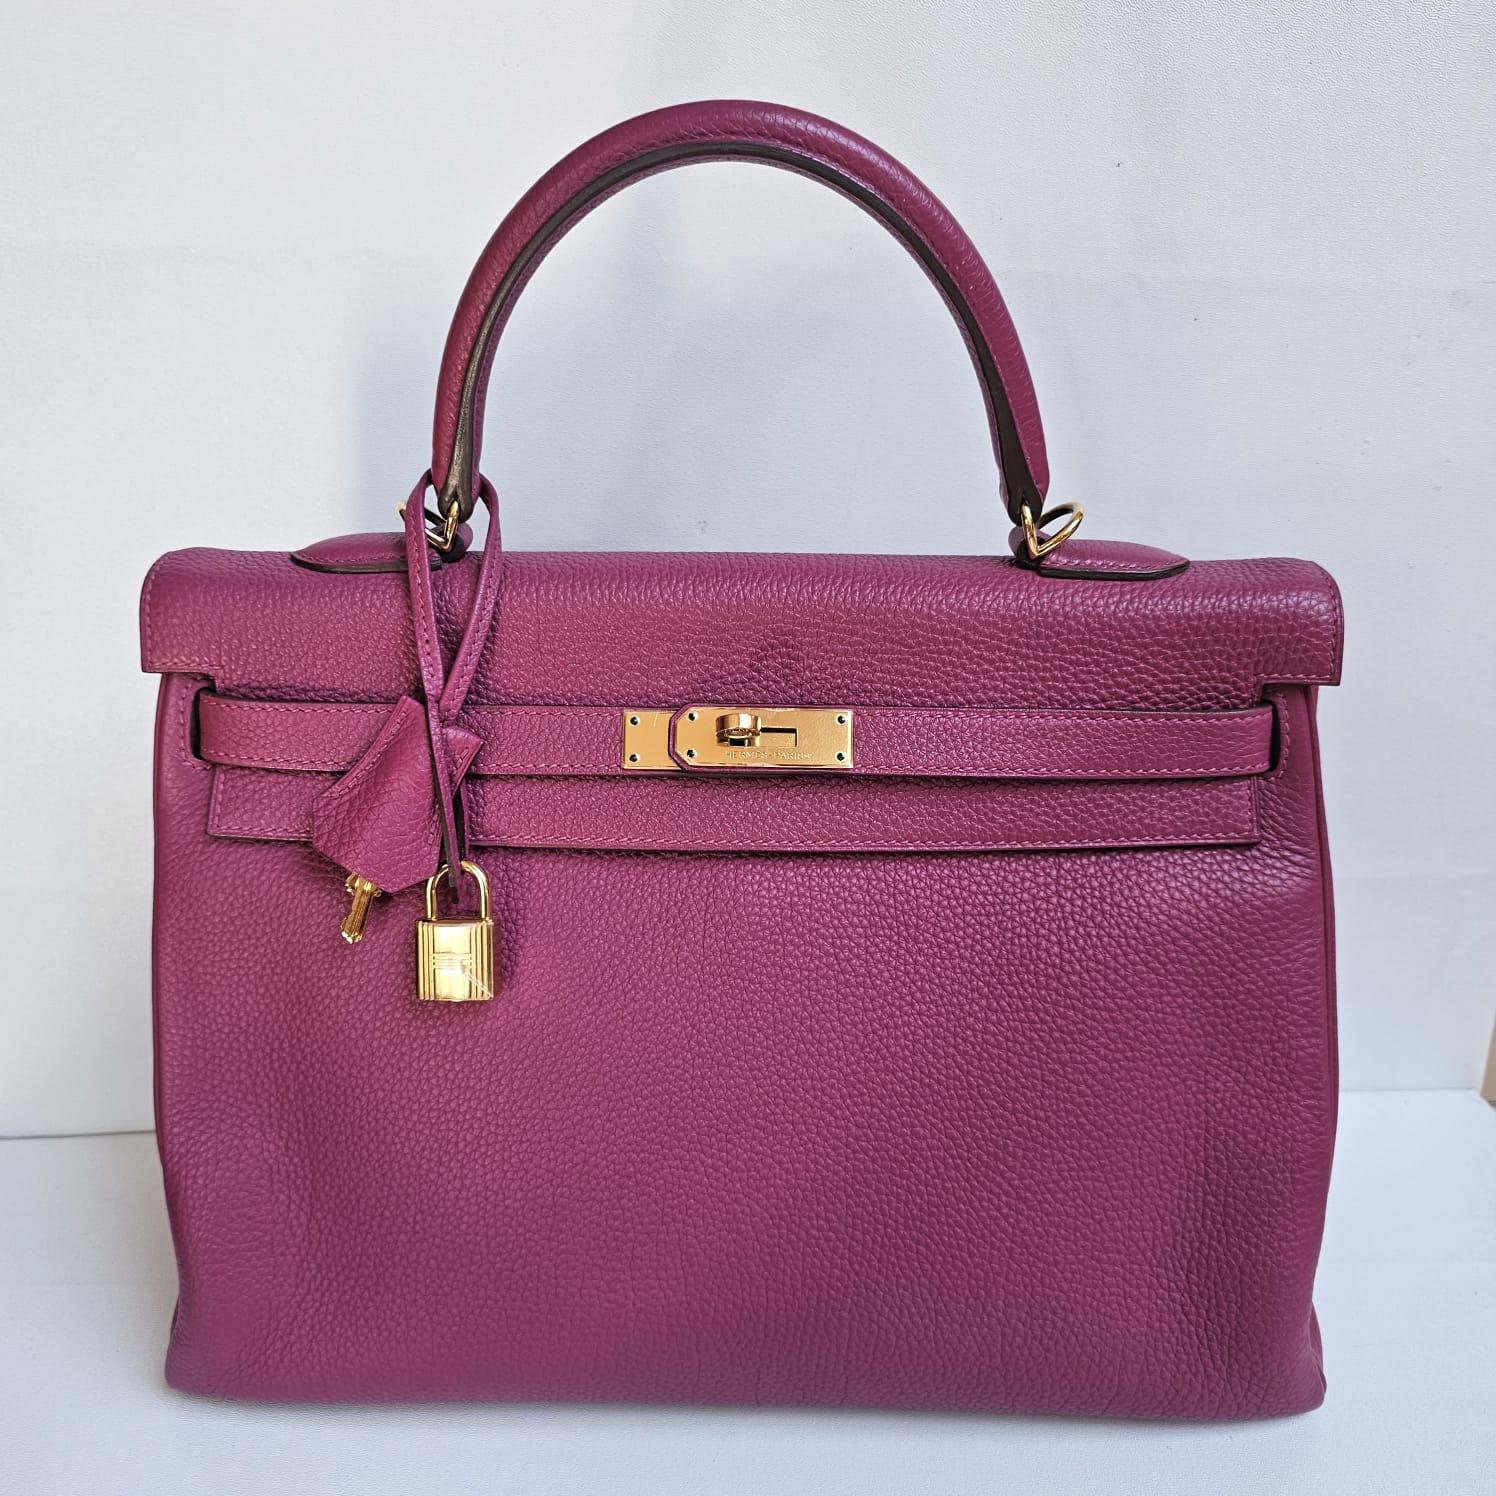 Hermes 2011 Kelly 35 Togo Purple Tosca Bag GHW For Sale 2